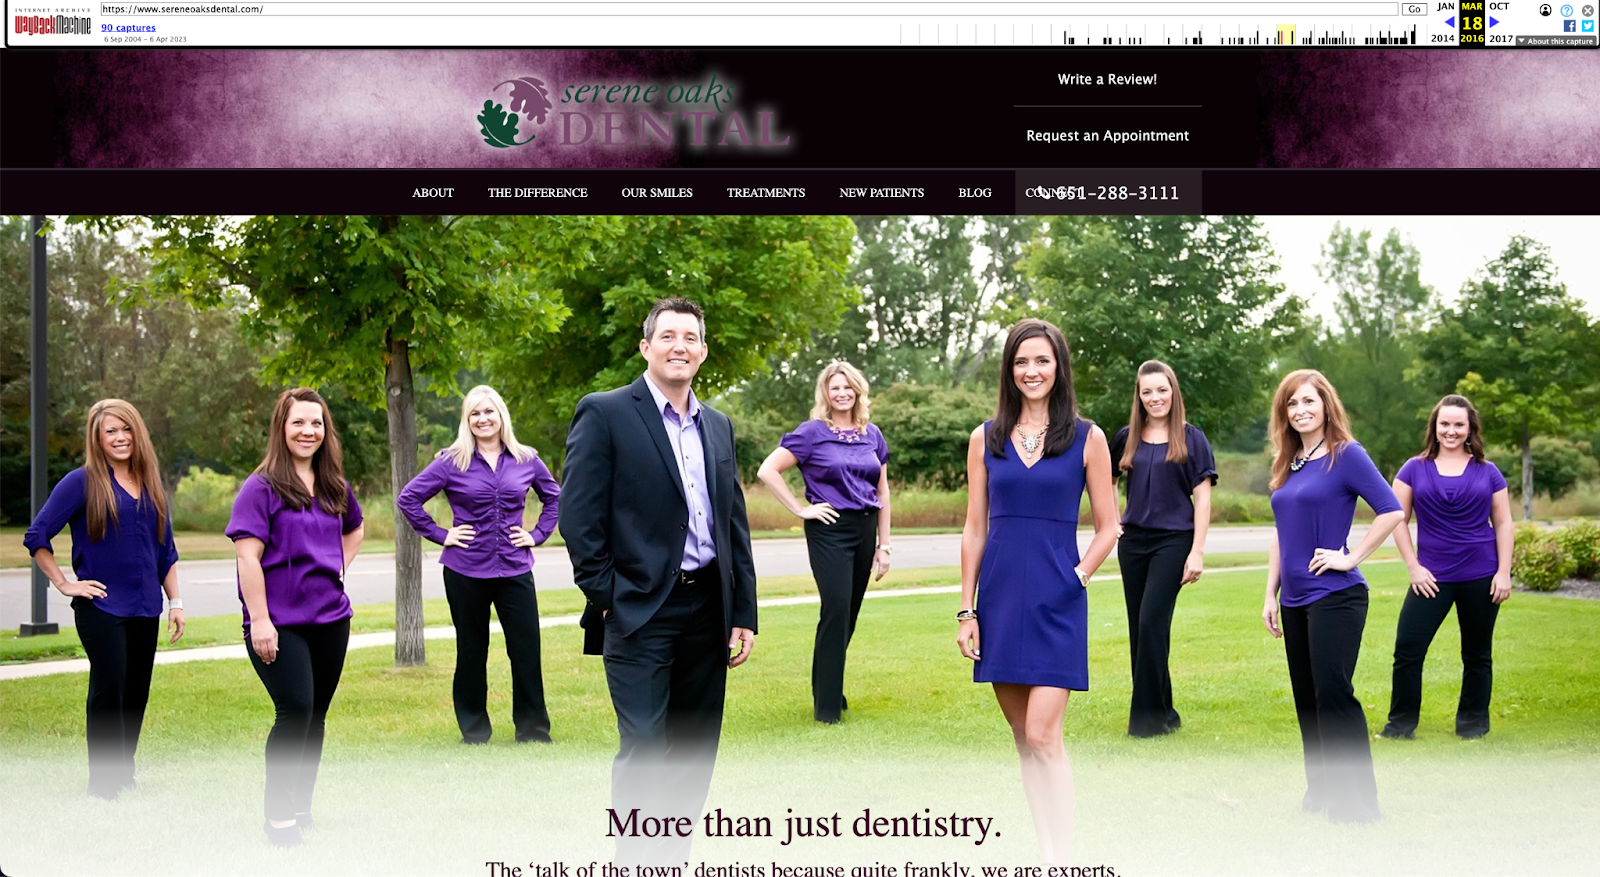 Résultat de l'archive Web de la page d'accueil de Serene Oaks Dental